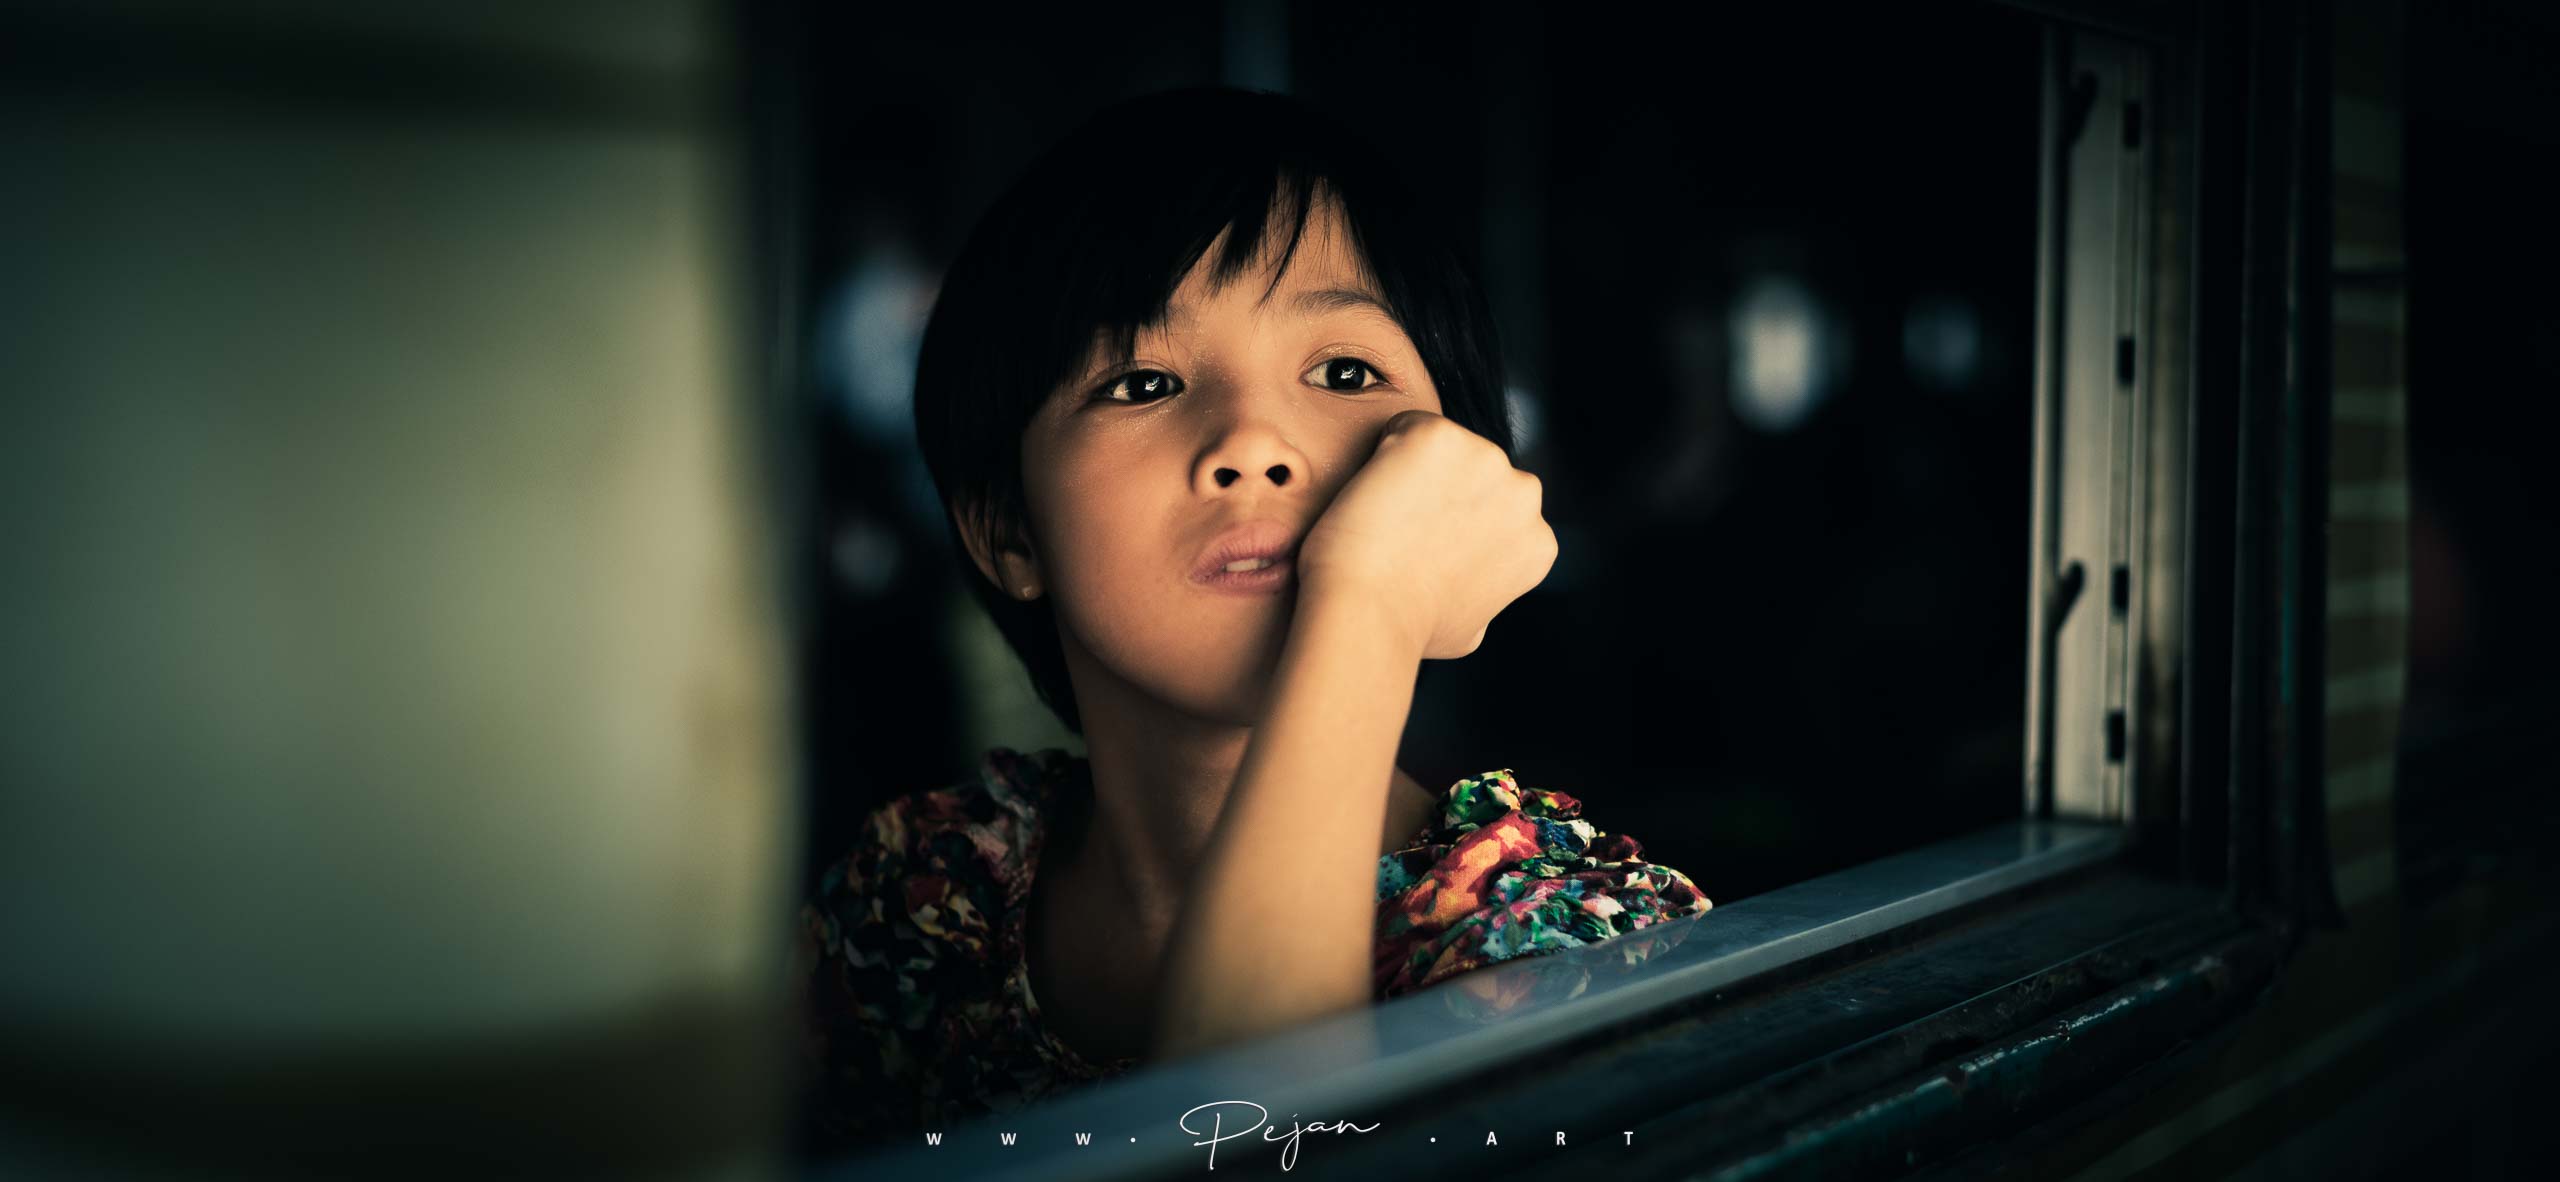 Portrait d'une jeune fille qui regarde par le fenêtre d'un train à Yangoon en Birmanie, Asie du Sud-Est. Elle a l'air d'être perdue dans ses pensées.